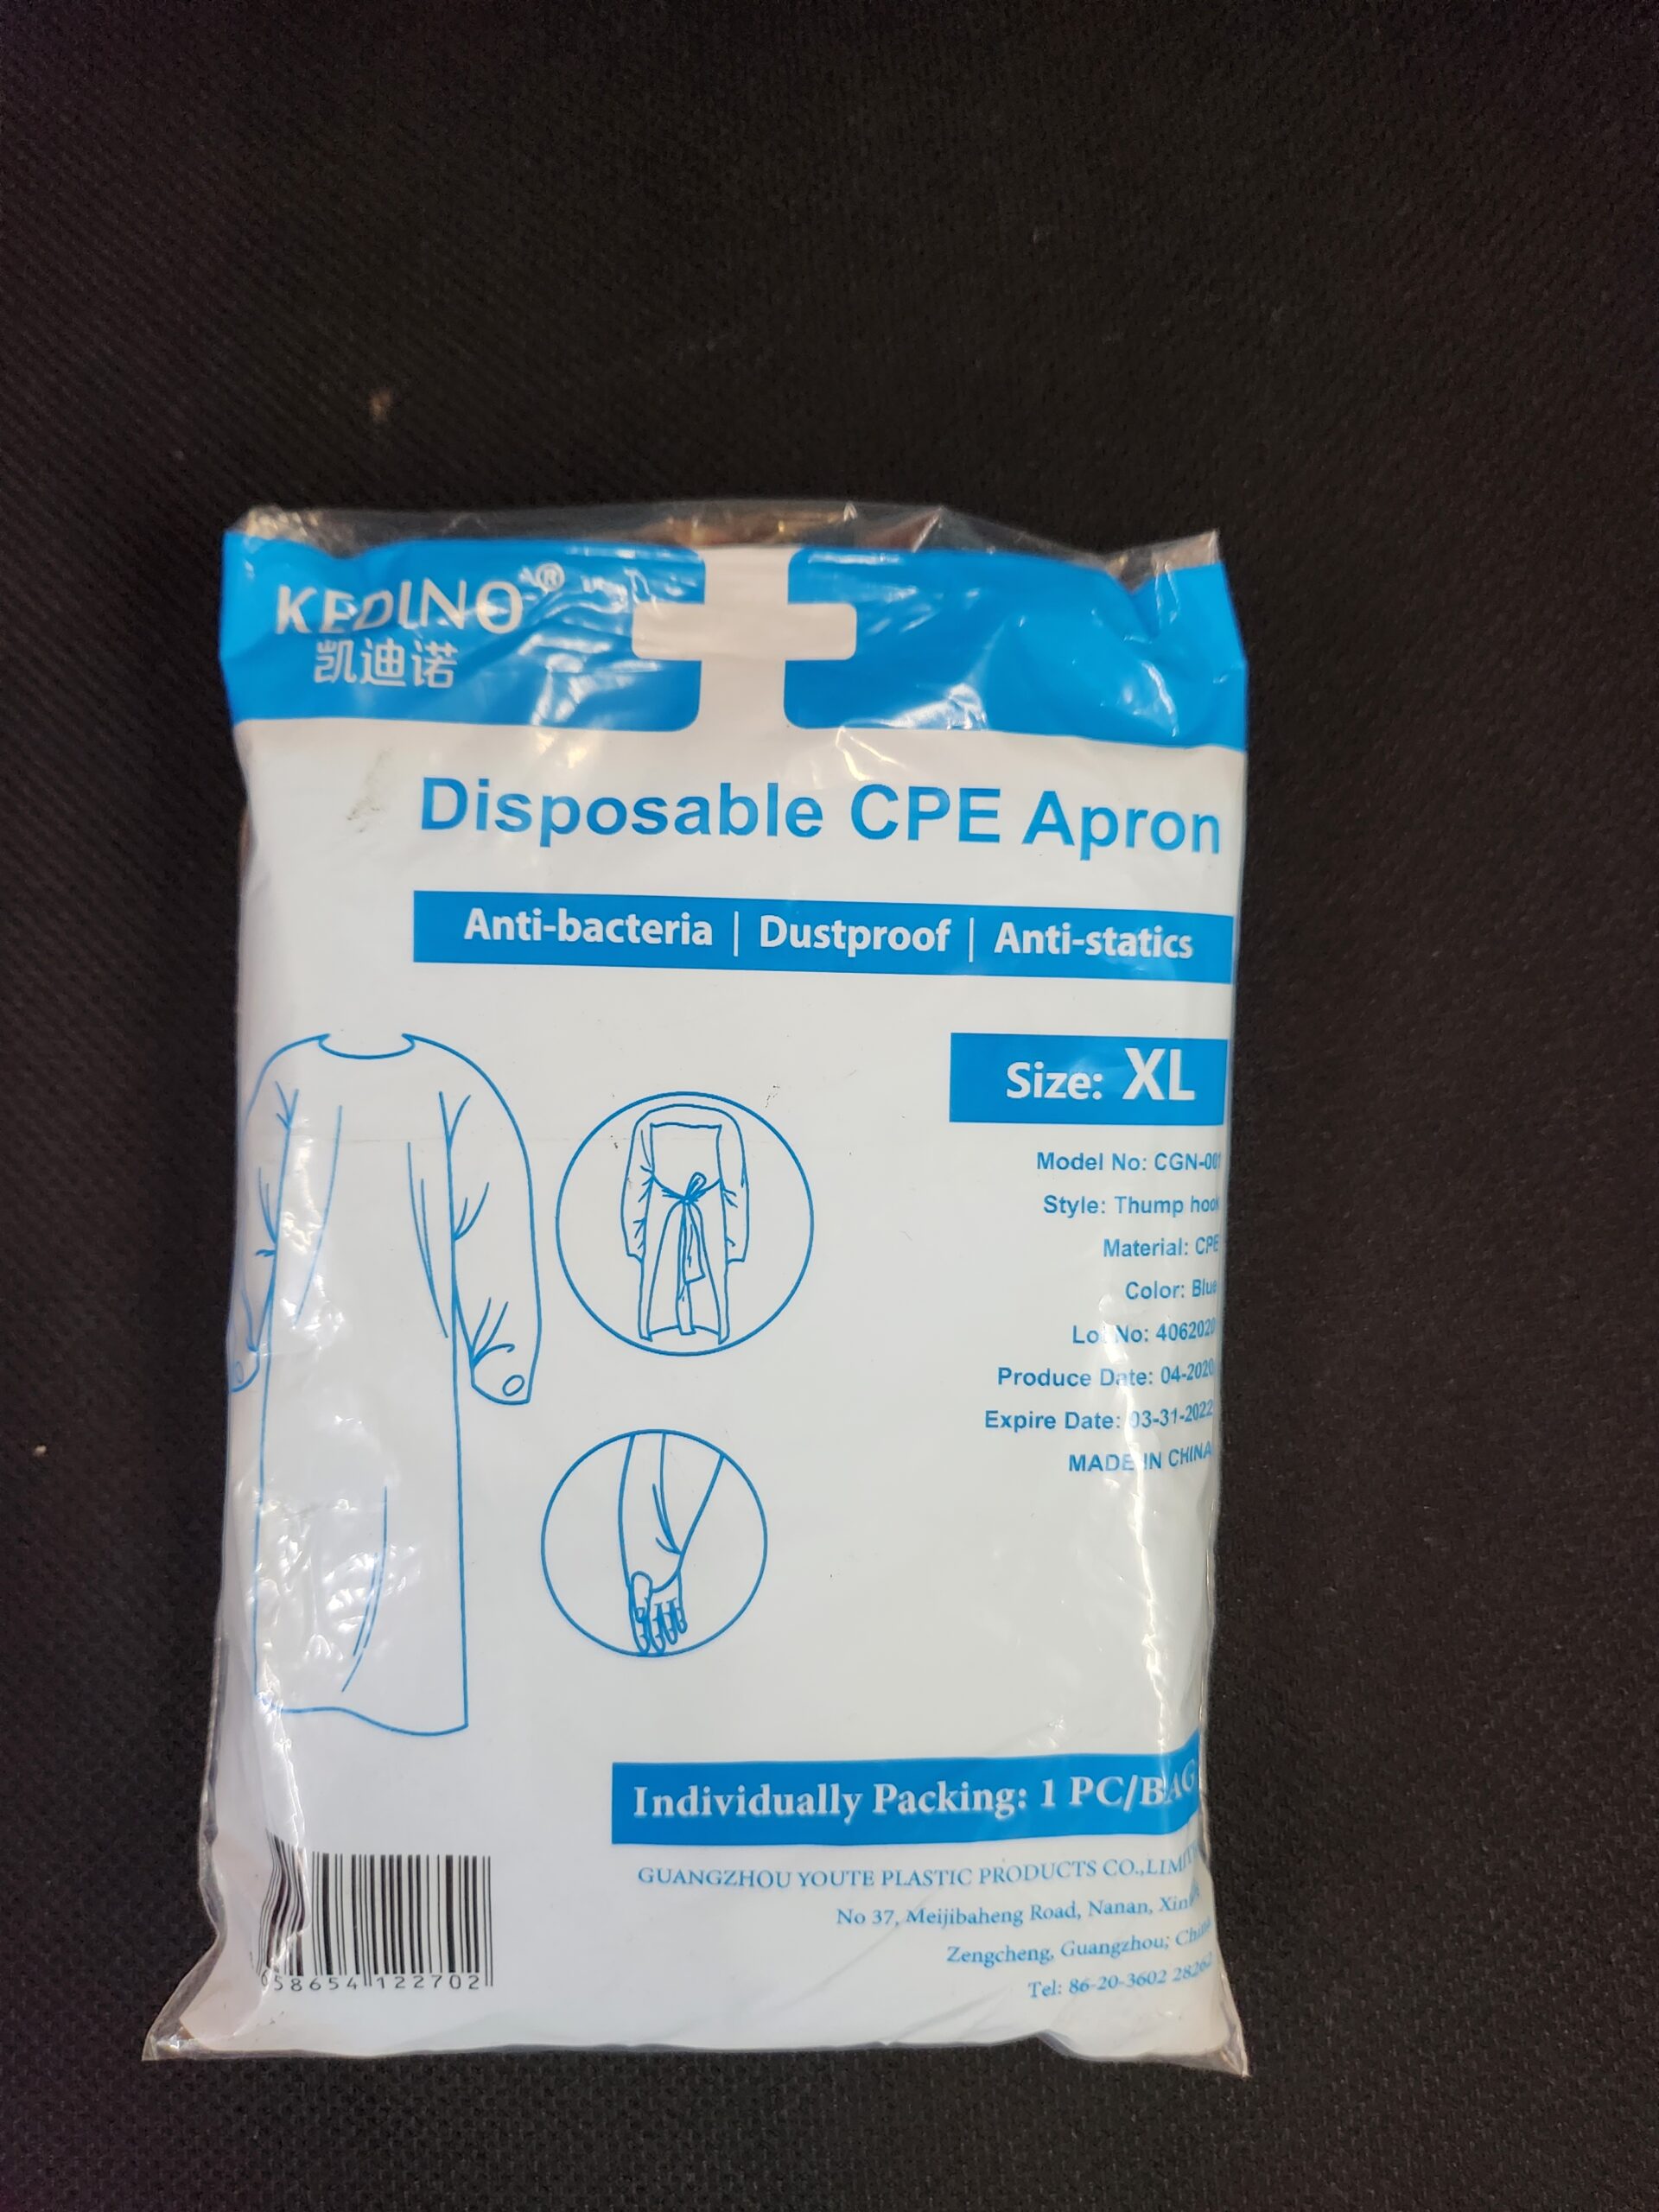 PPE - Disposable CPE Apron